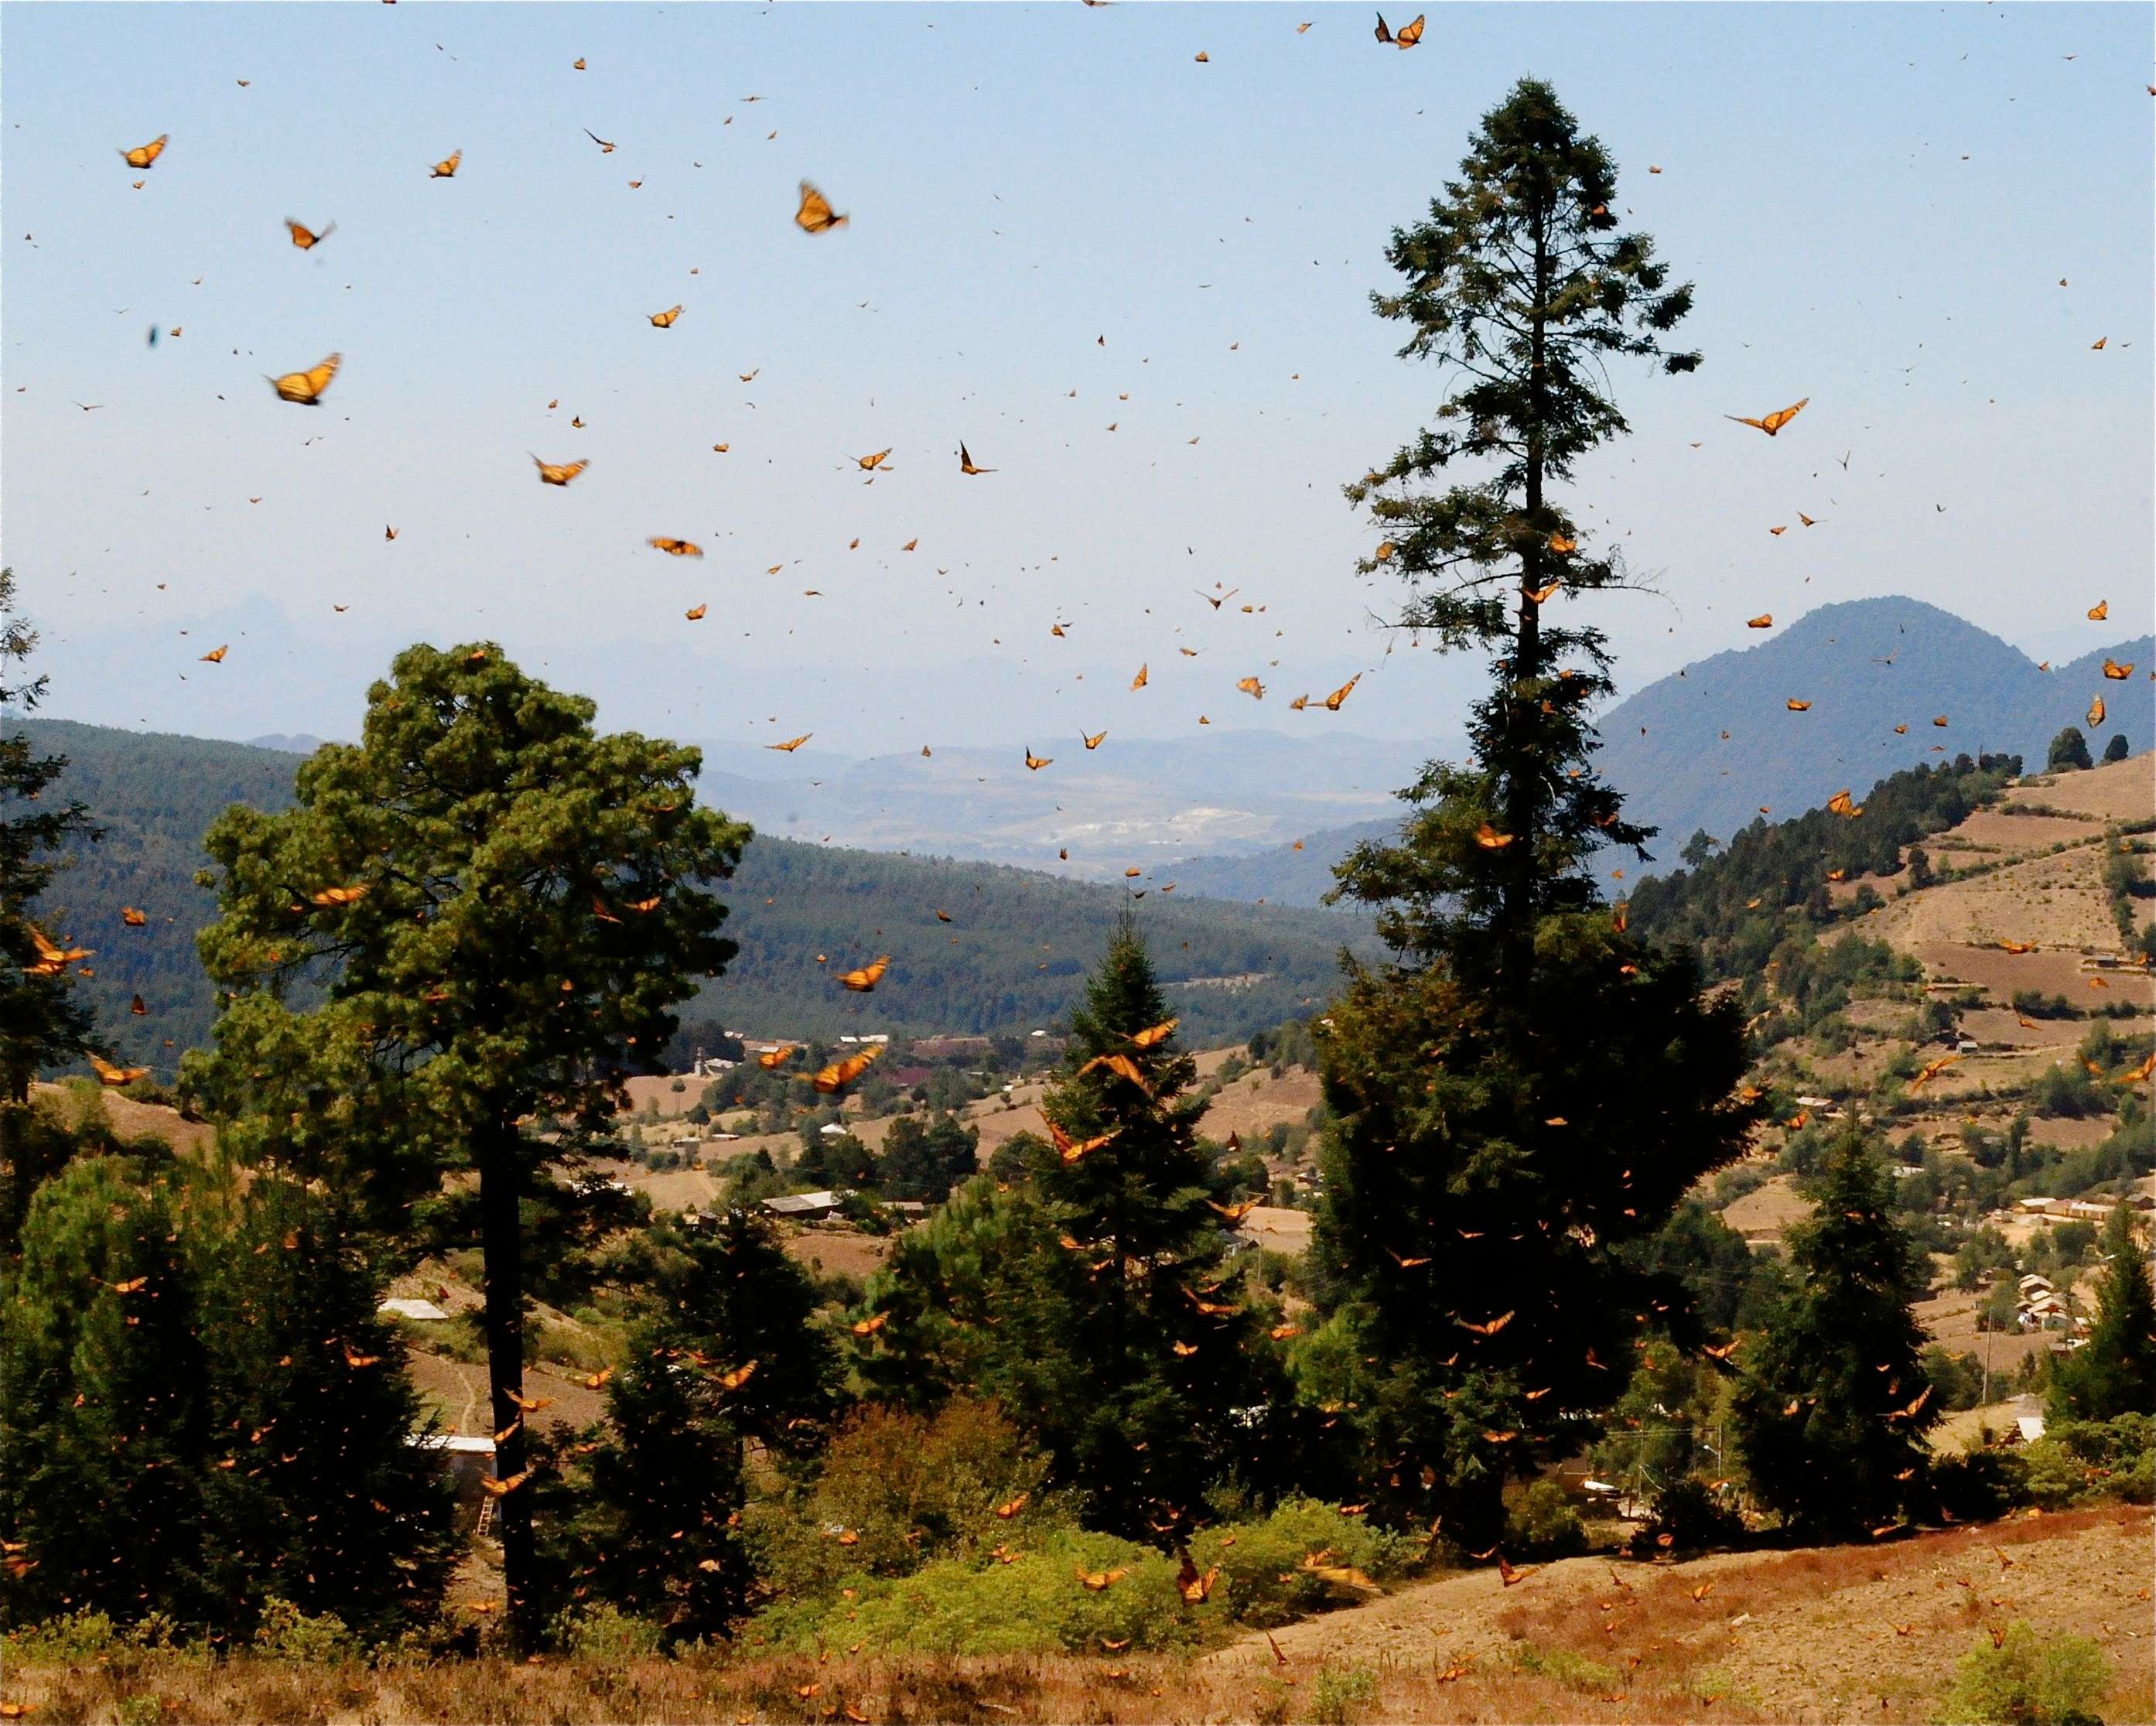 Monarchs over hills